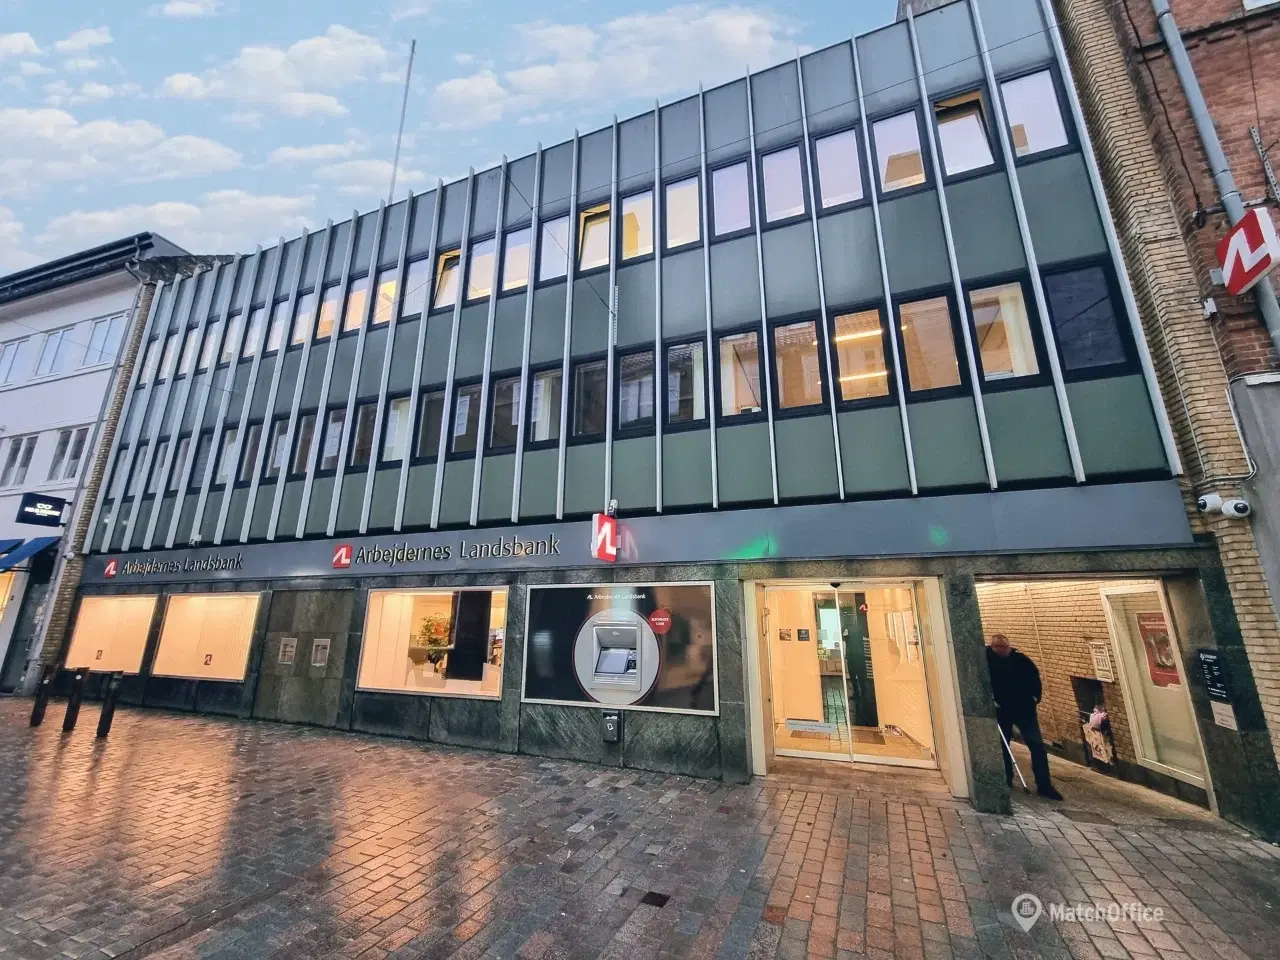 Billede 1 - Investeringejendom i Viborg centrum - 1. års forrentning 7.88%